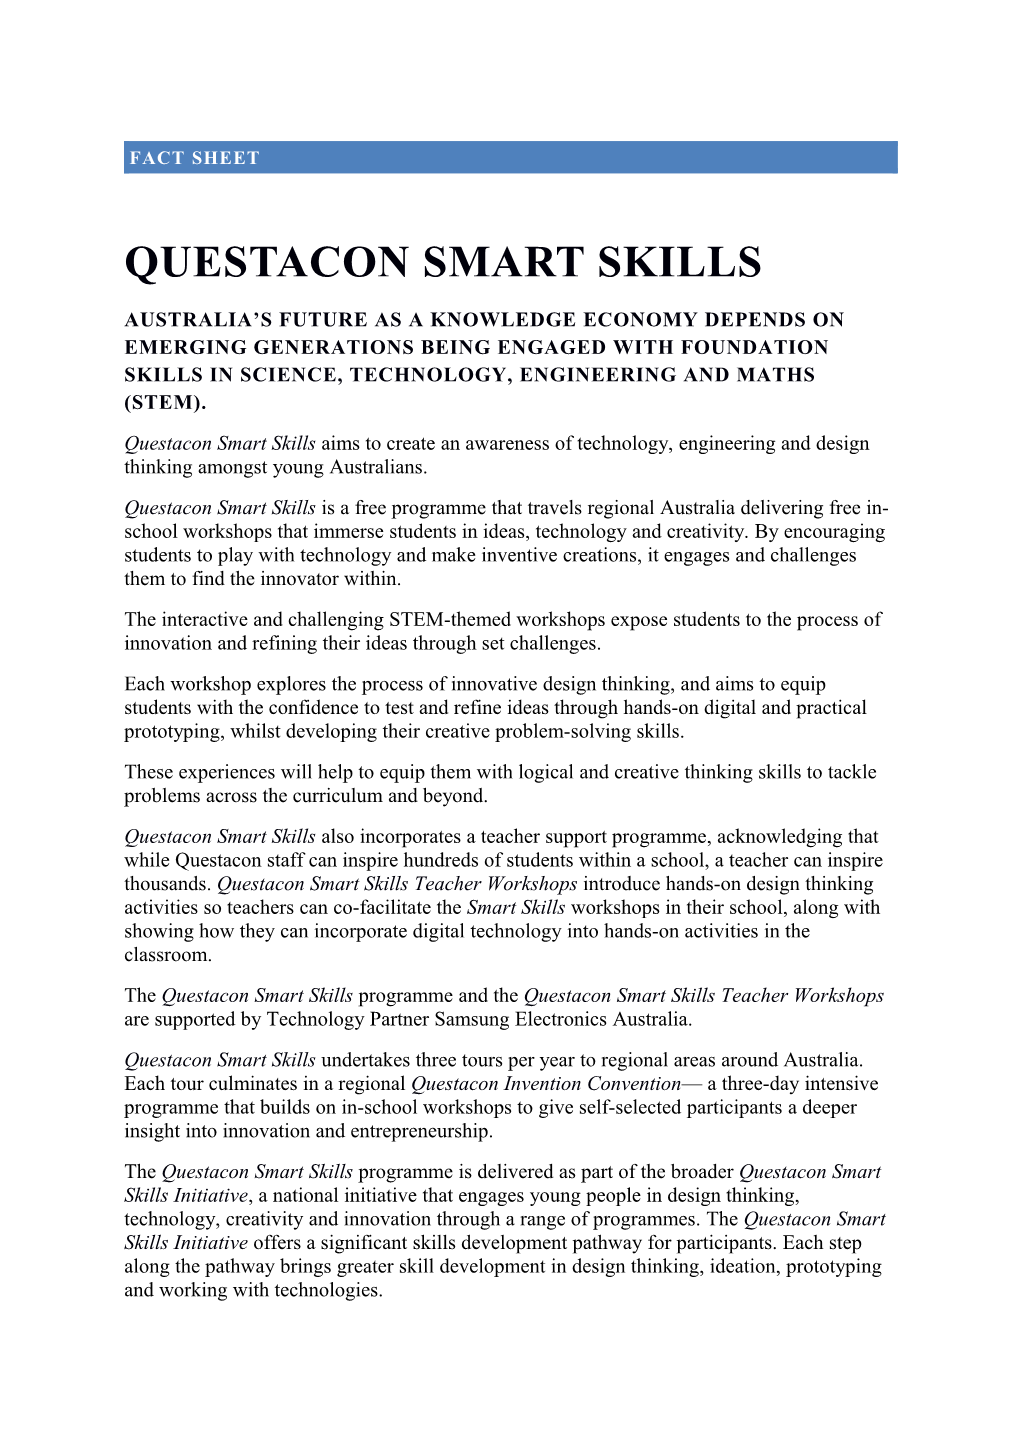 Questacon Smart Skills